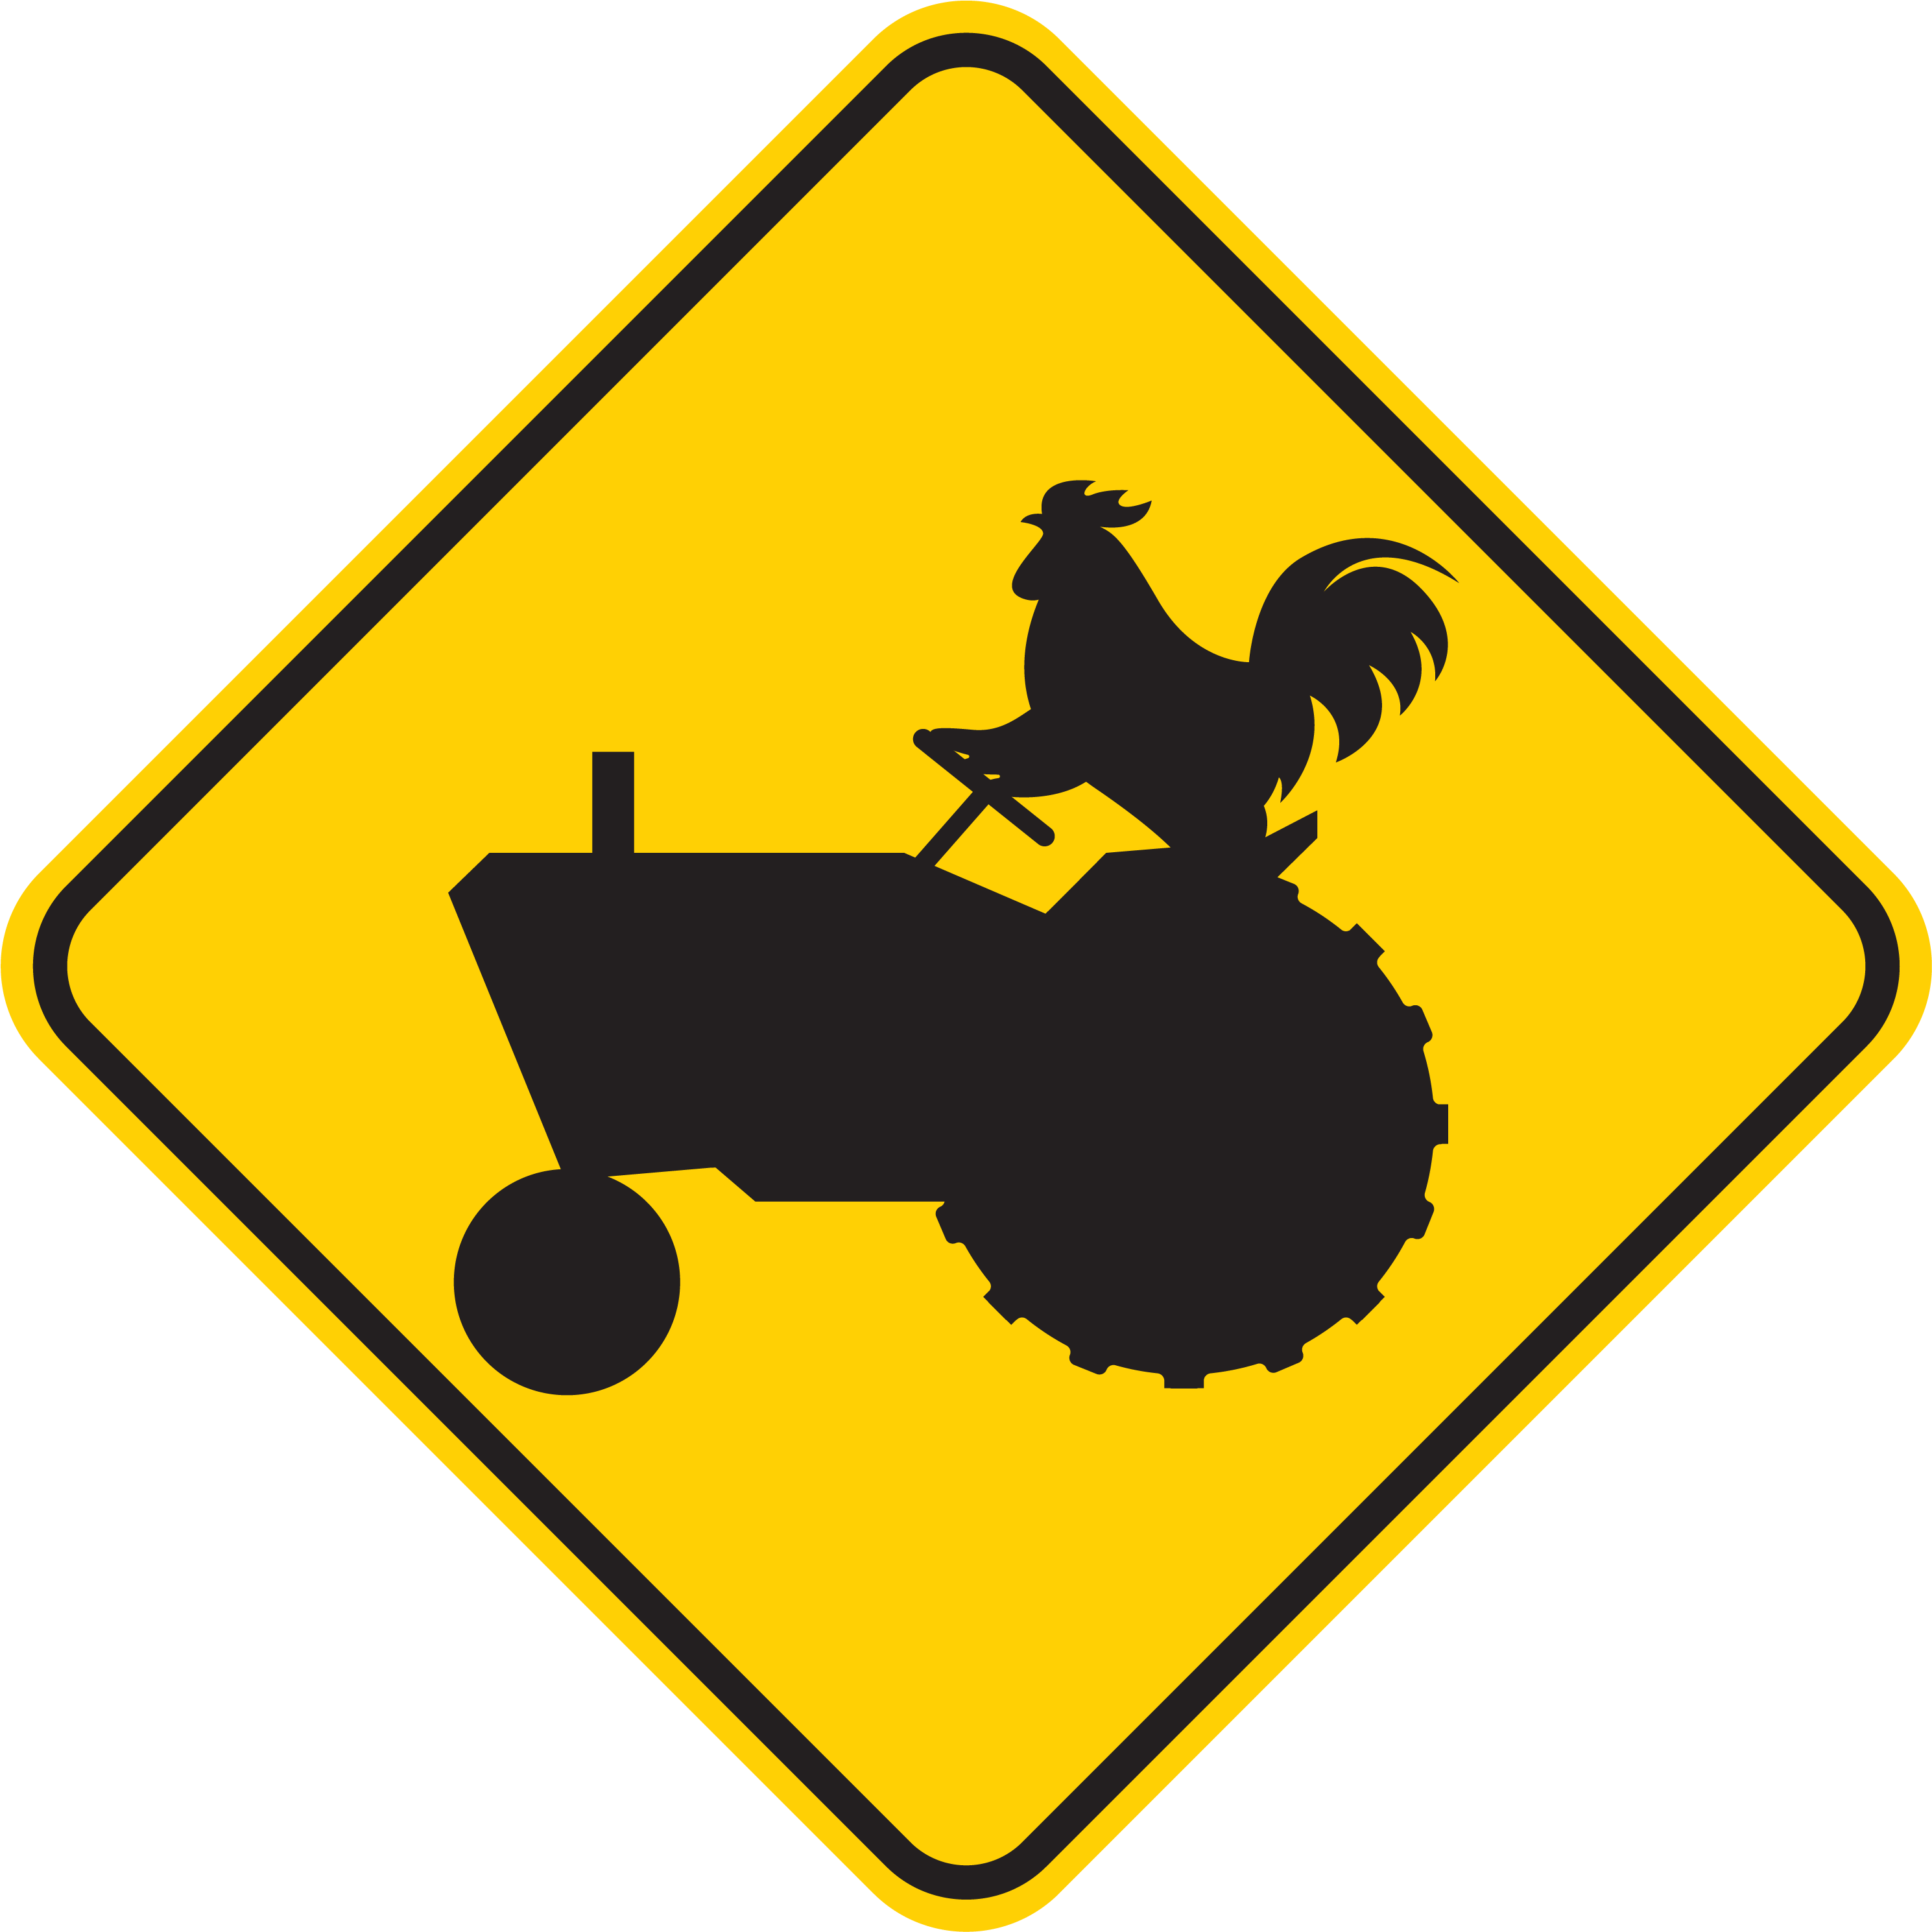 Northwest Chicken Tractors - Farm Vehicle Sign (5896x4443)